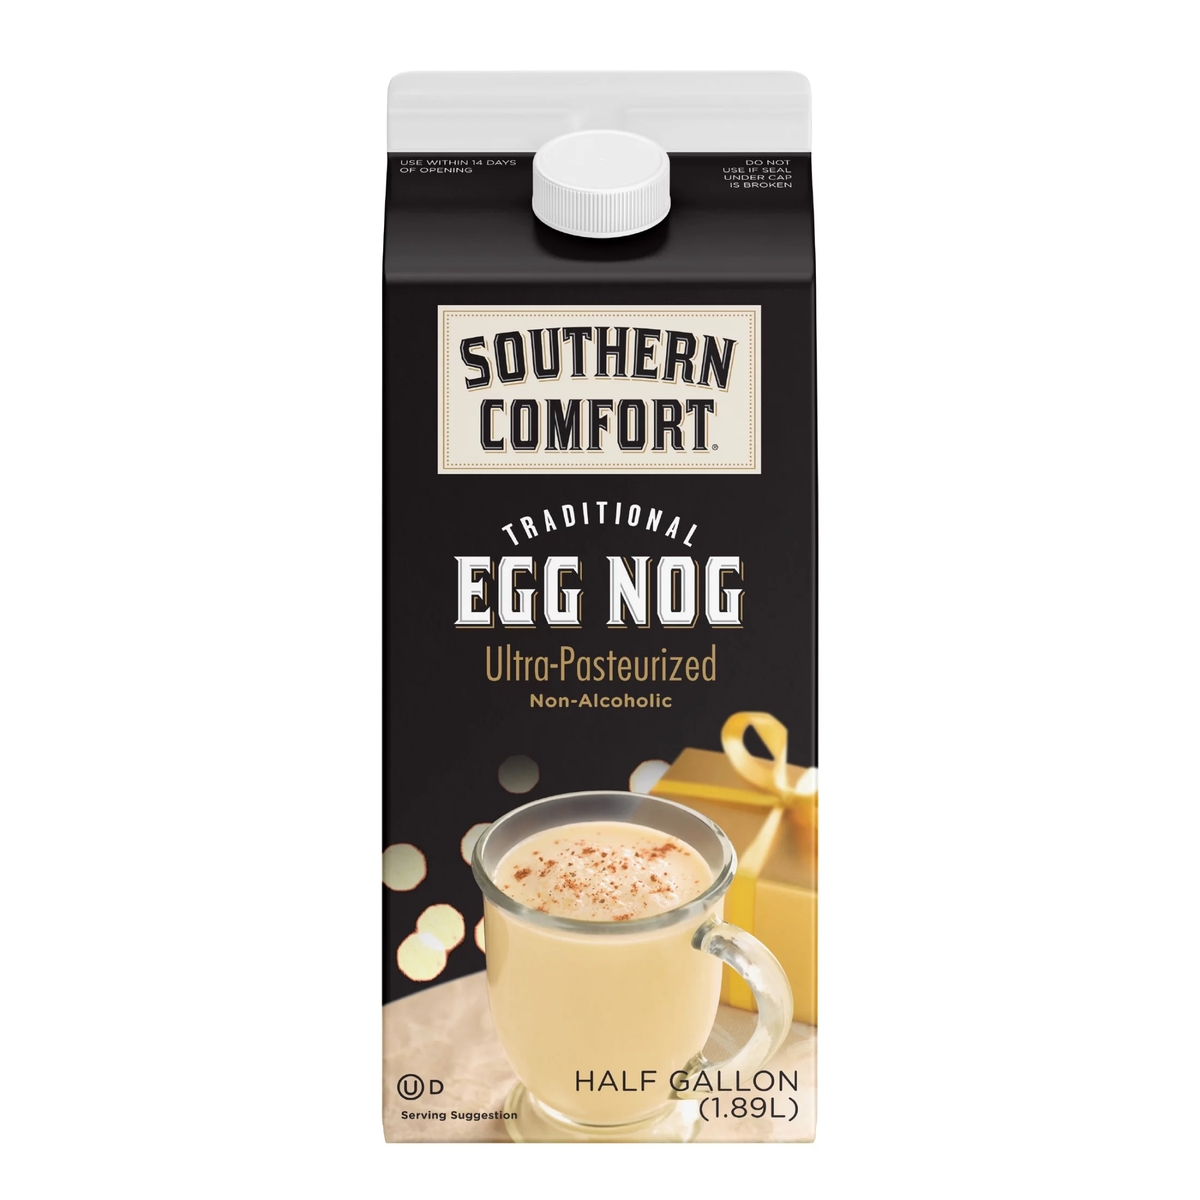 Southern Comfort Egg Nog : Traditional